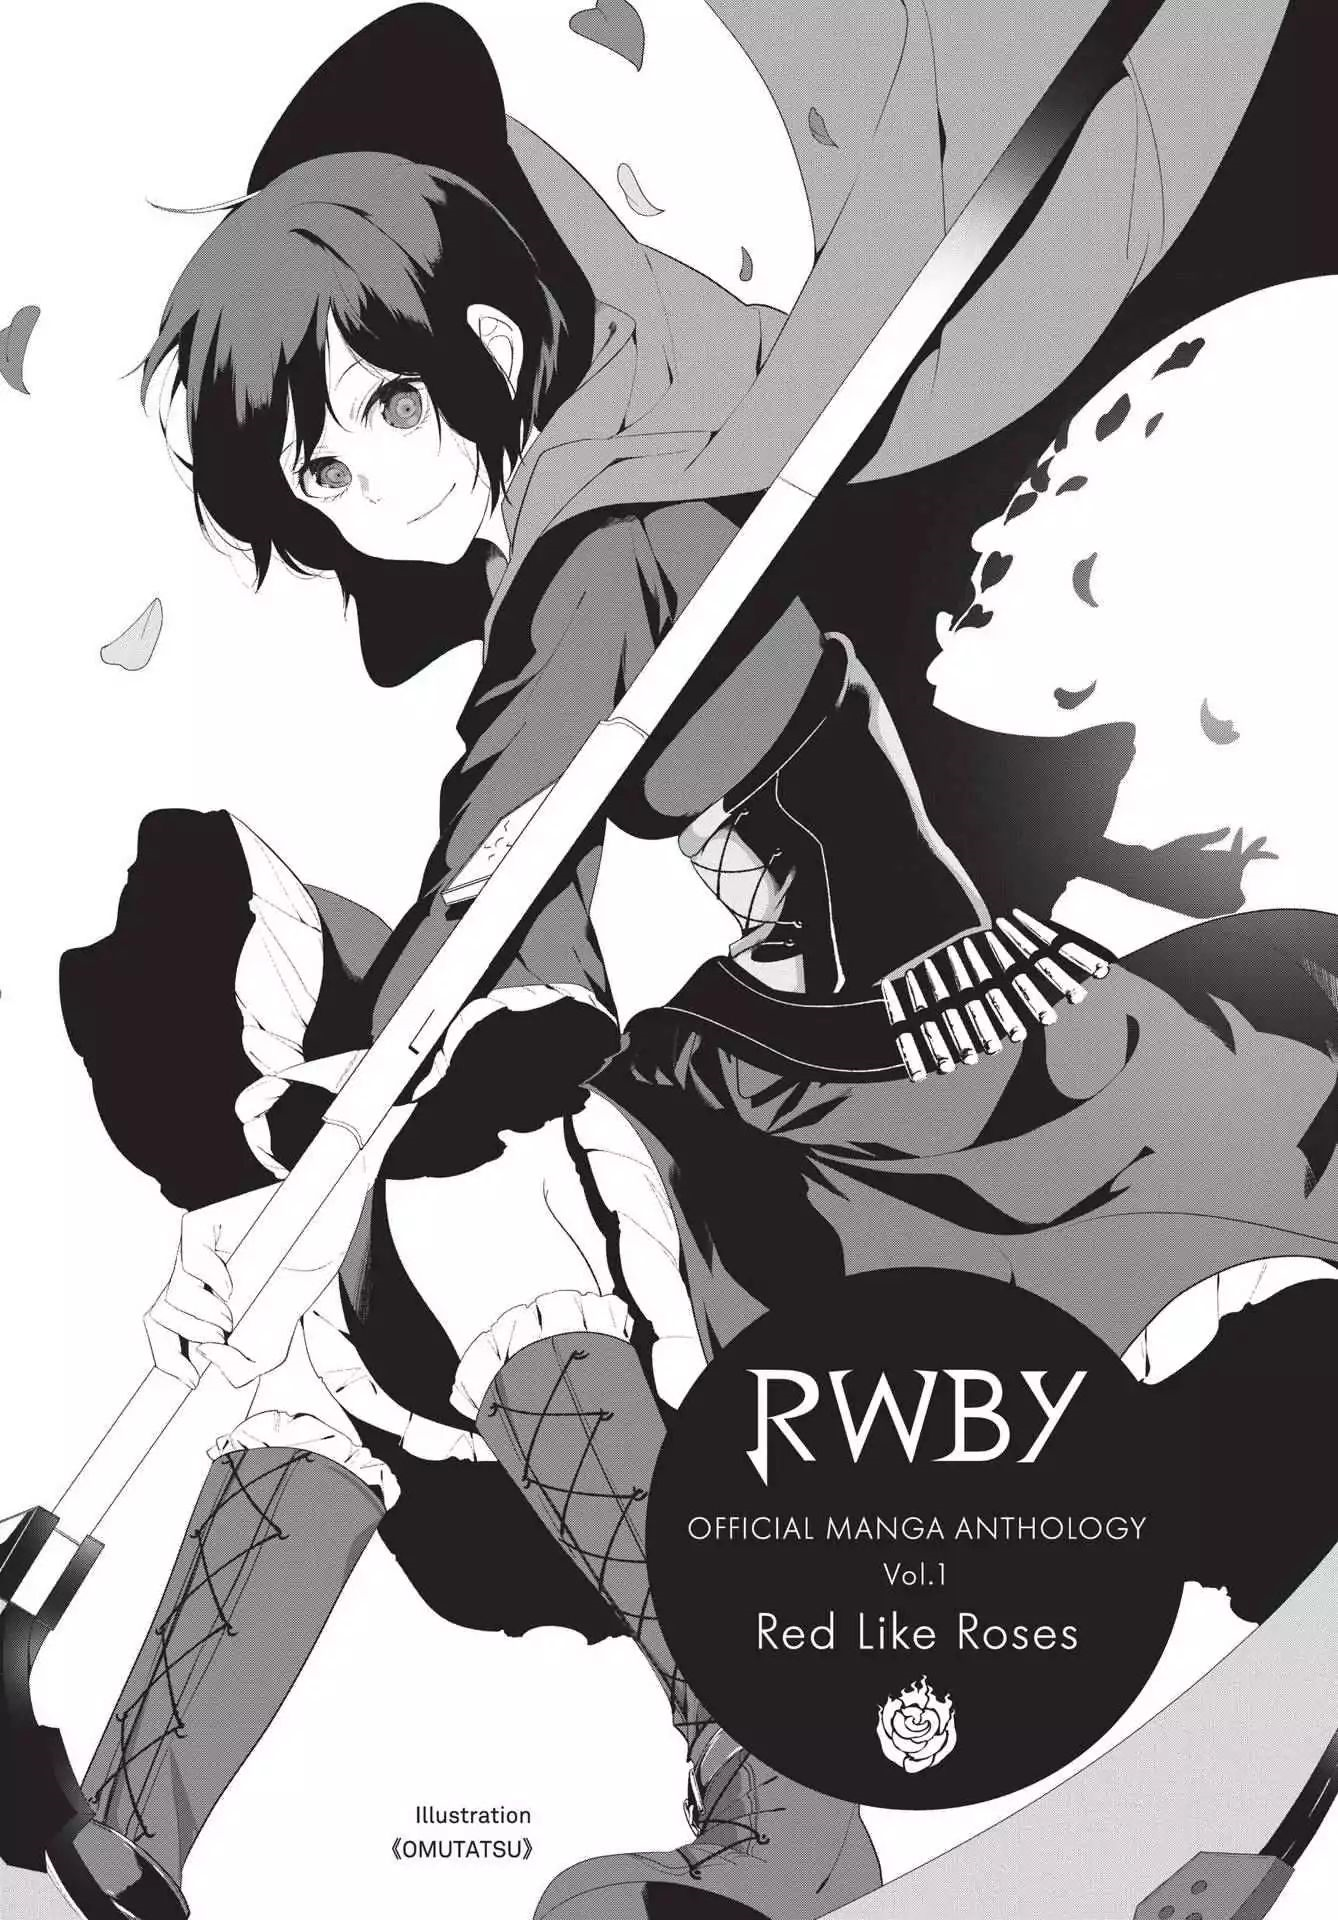 Антология манги. RWBY Manga Anthology 5 Vol. Маленькая европейская антология Манга.